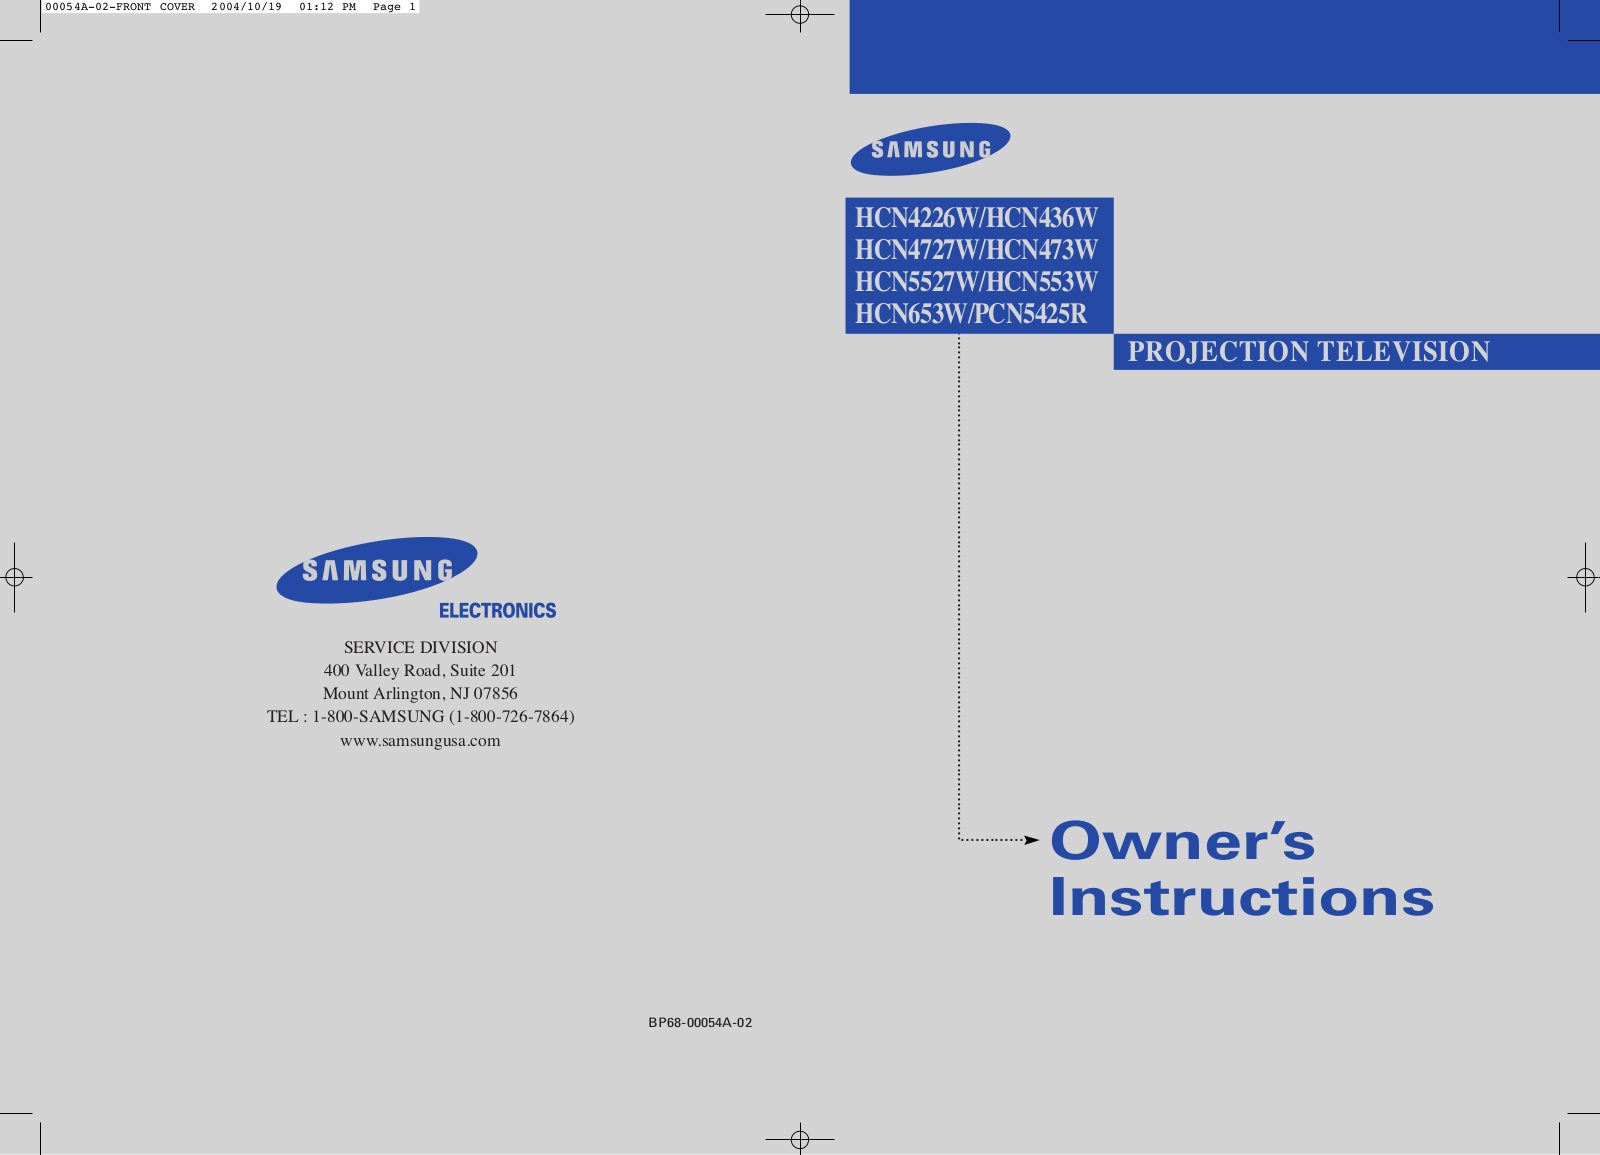 Samsung HCN5527W, HCN436W, PCN5425R, HCN473W, HCN653W User Manual